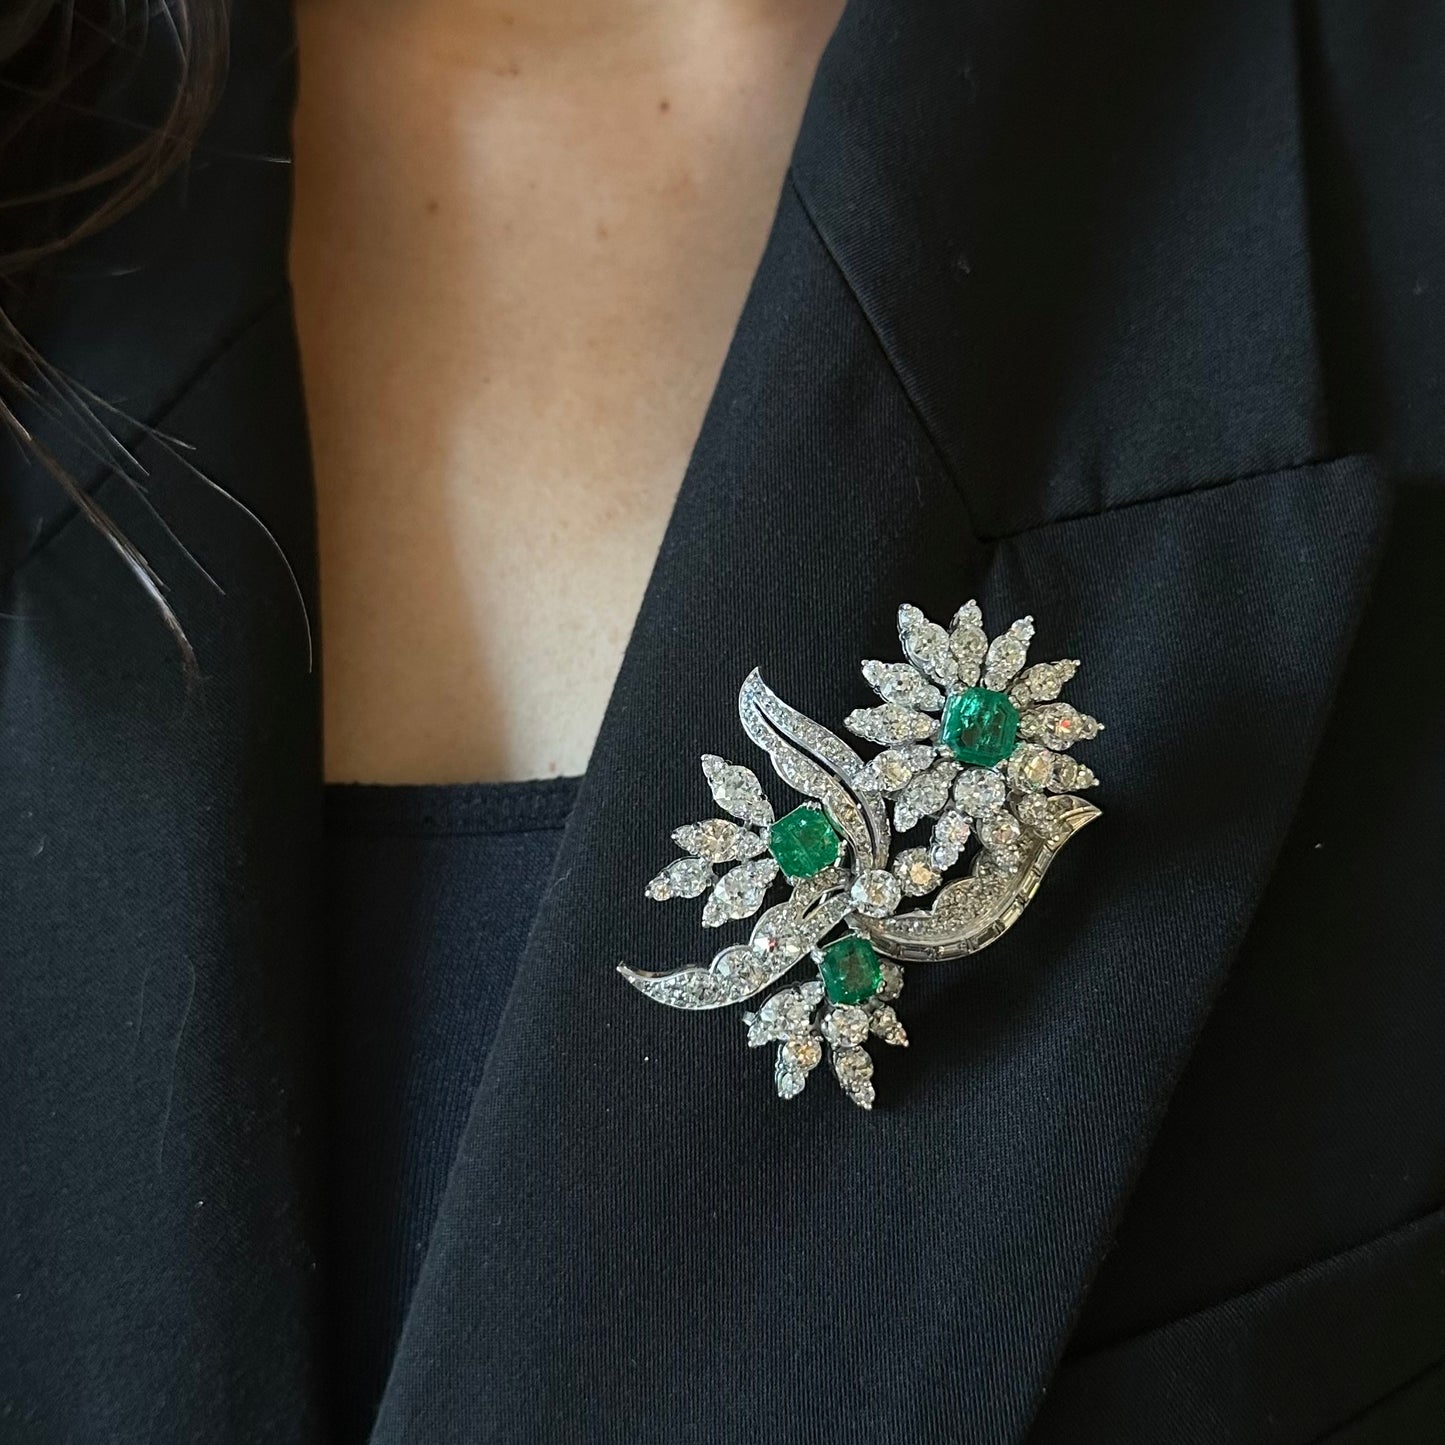 1960s Platinum Diamond & Emerald Flower Brooch worn on blazer